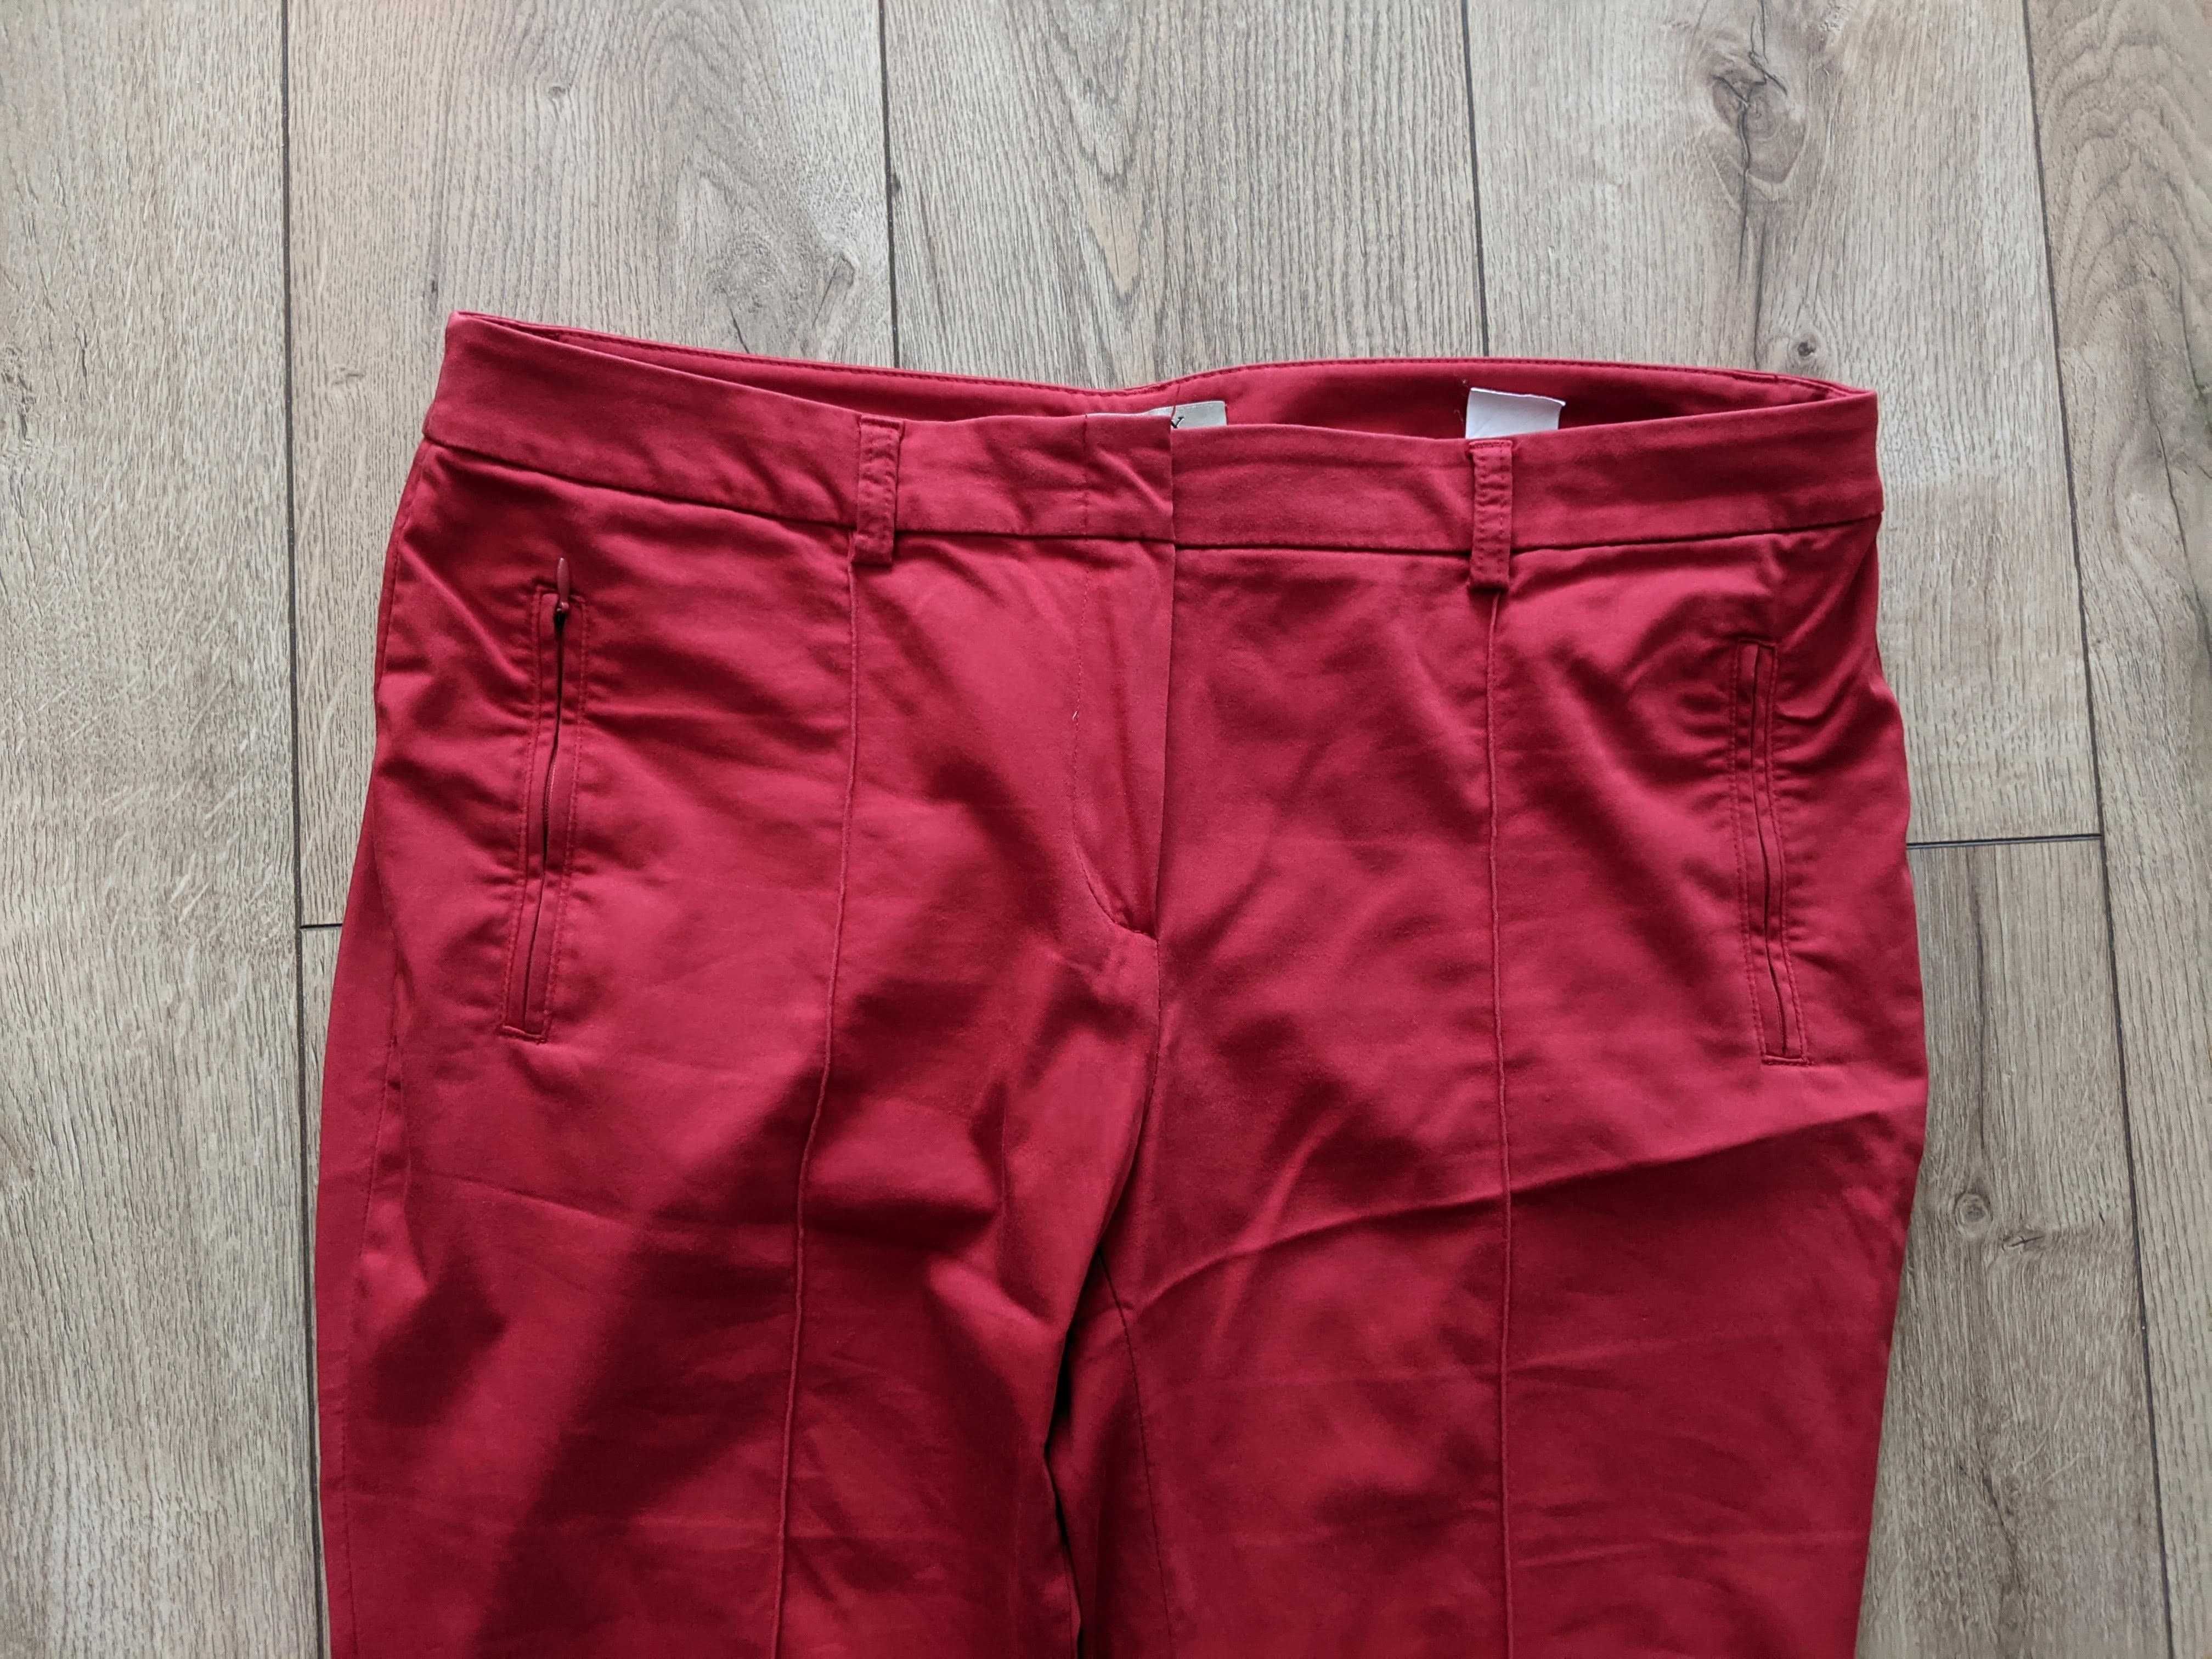 Spodnie damskie 44 czerwone lycrazgrabne 2XL pas94